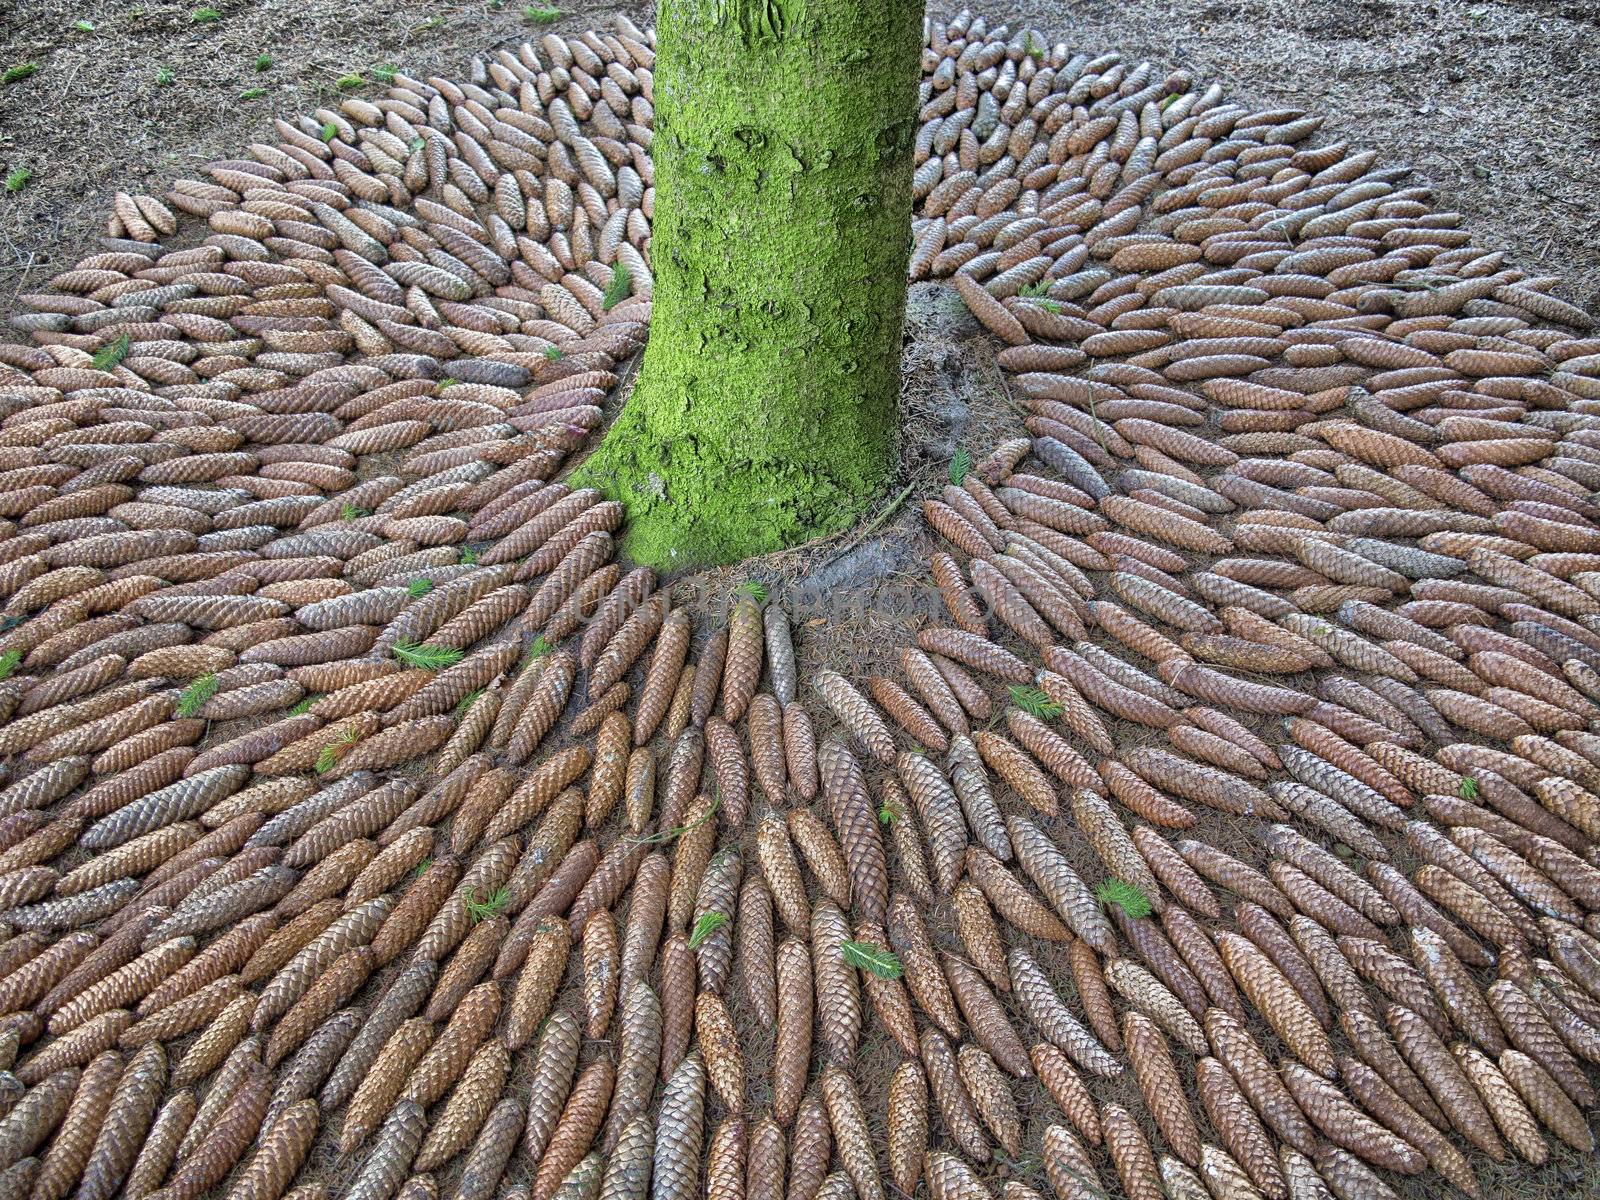 Decorative pattern of cones around pine in a Danish garden.